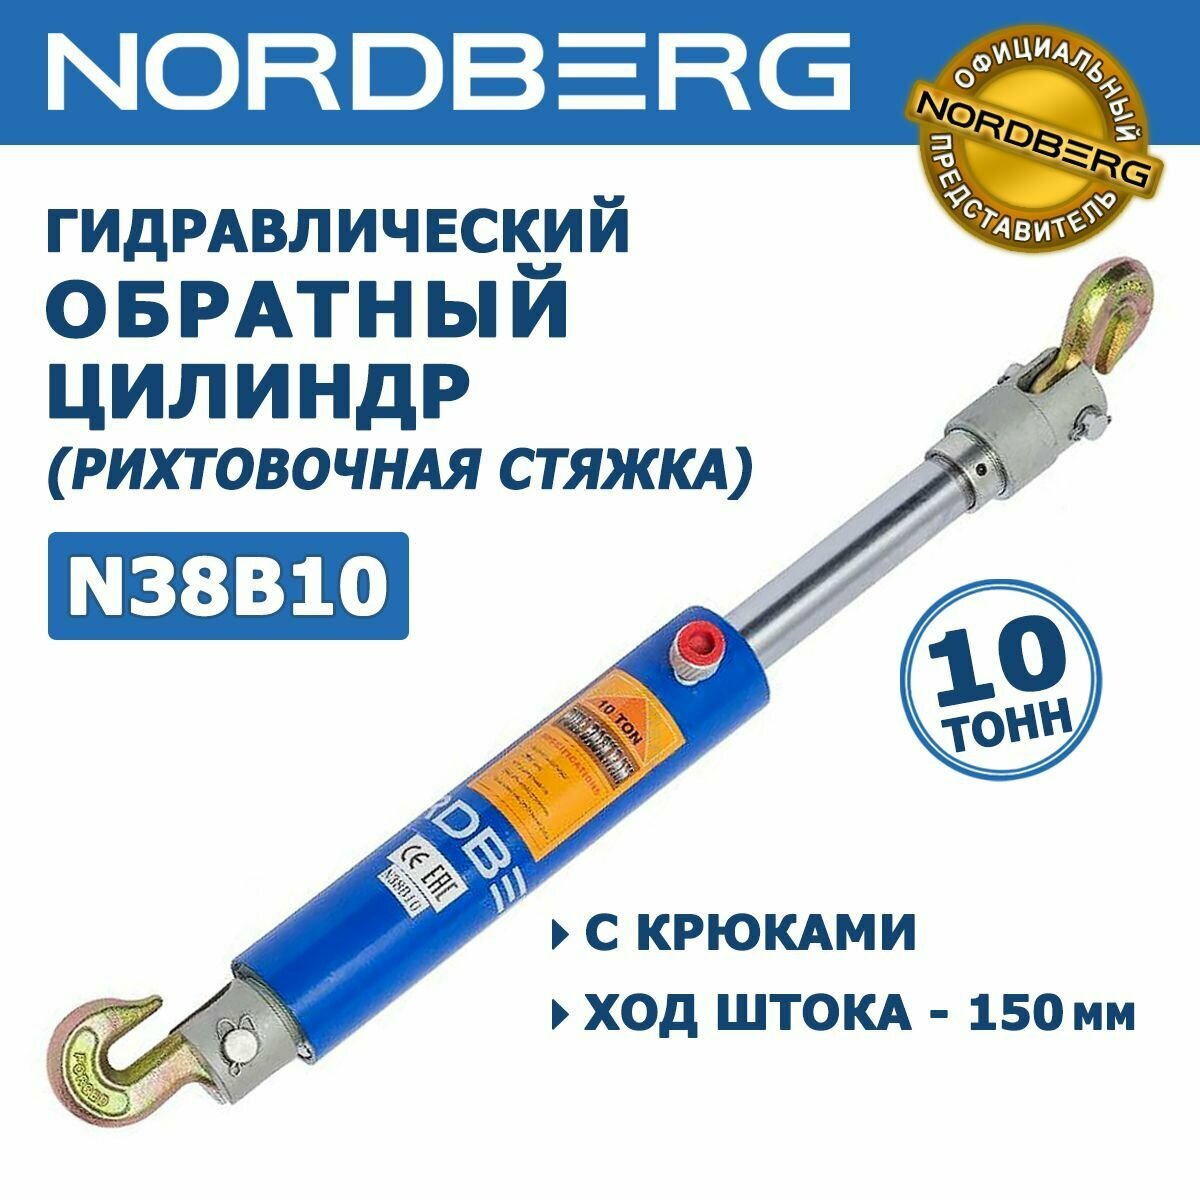 Гидравлический стяжной цилиндр NORDBERG N38B10, обратный гидравлический цилиндр, стяжка с крюками, усилие 10 тонн, ход поршня 150 мм, штуцер 1/4 NPT (F)